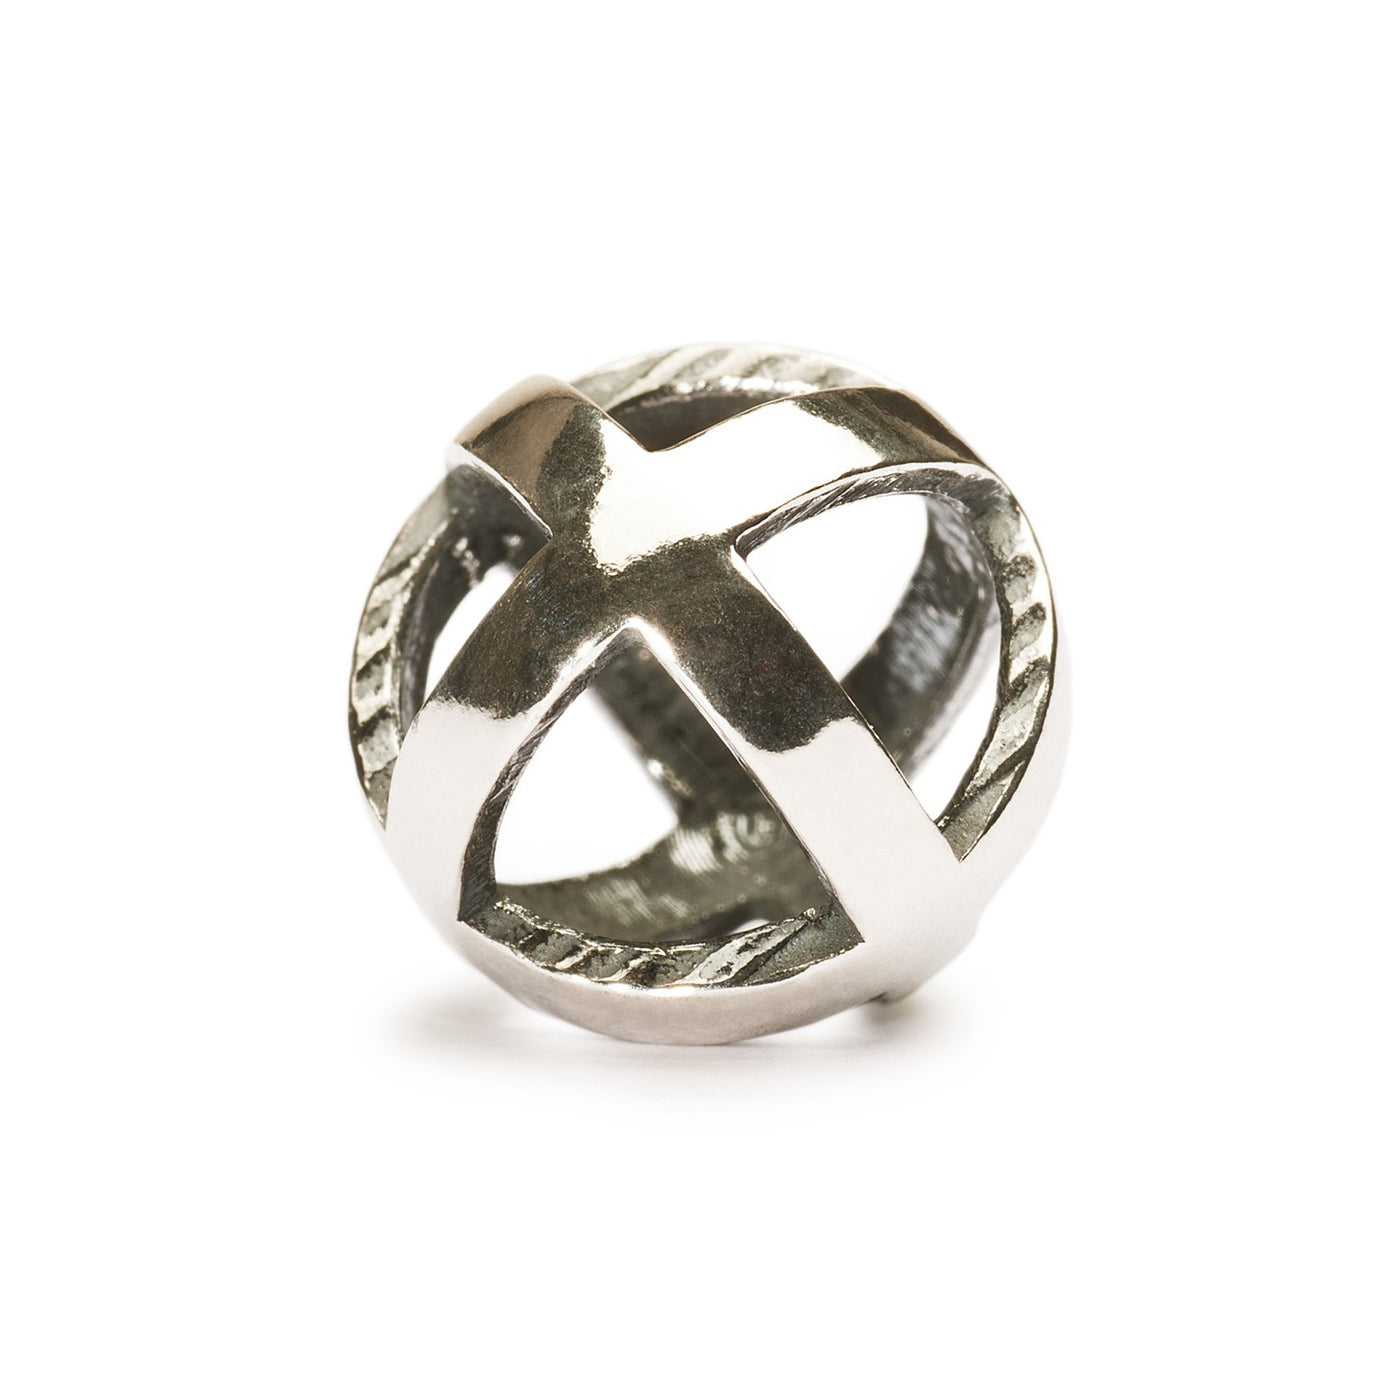 Vær positiv kugle i sterling sølv, med et design af et plus-symbol i en cirkulær form, som minder dig om at være positiv til enhver tid.